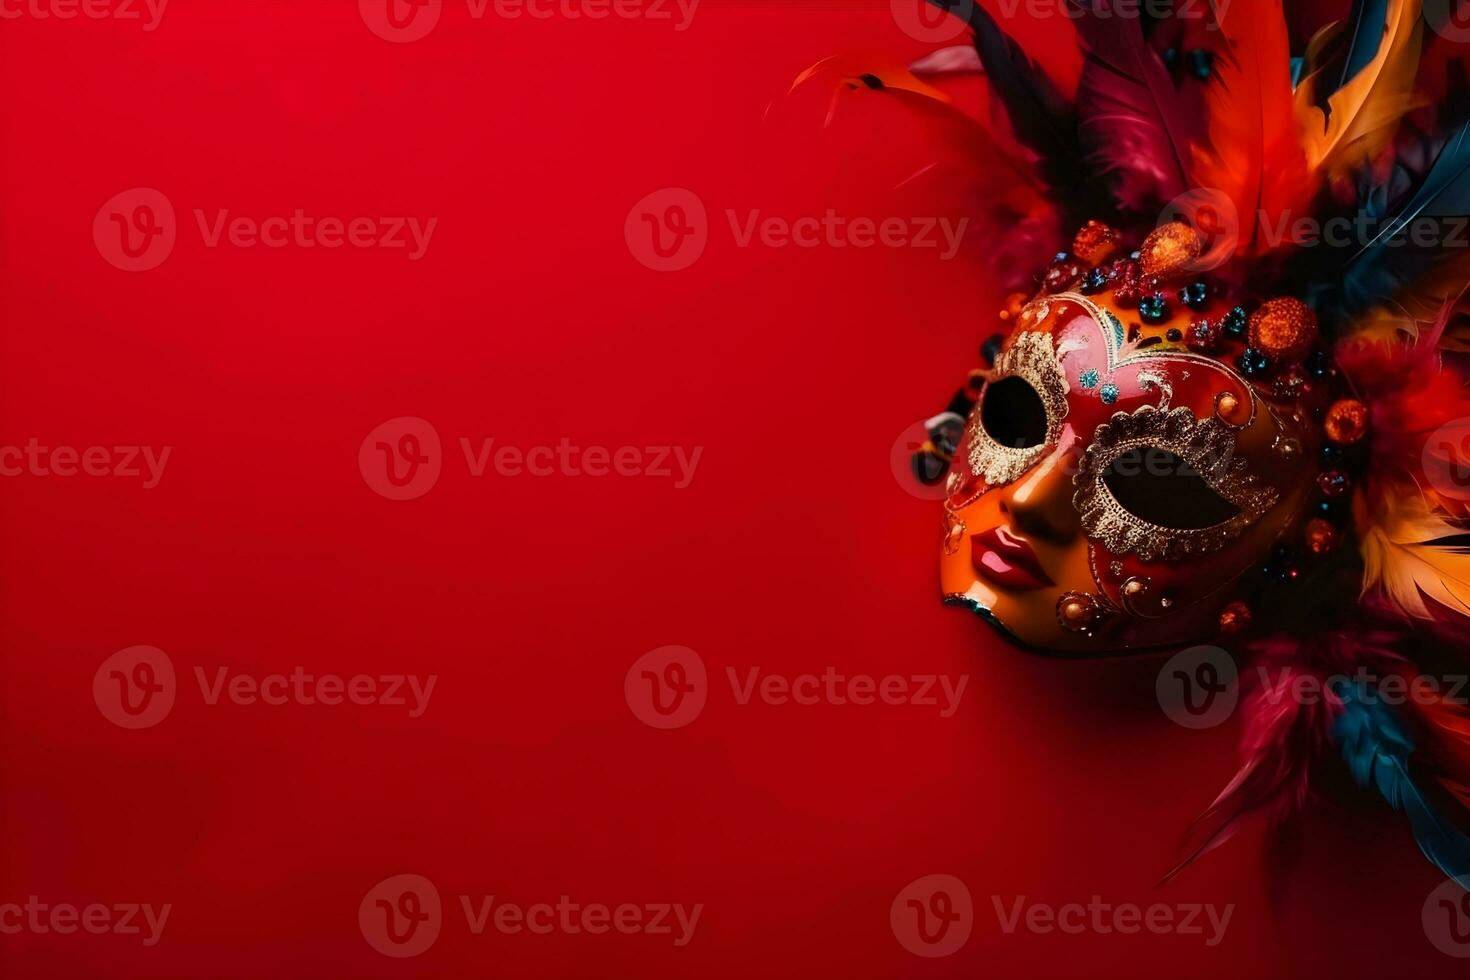 schön Karneval Maske mit Gefieder auf rot Hintergrund mit Copyspace foto